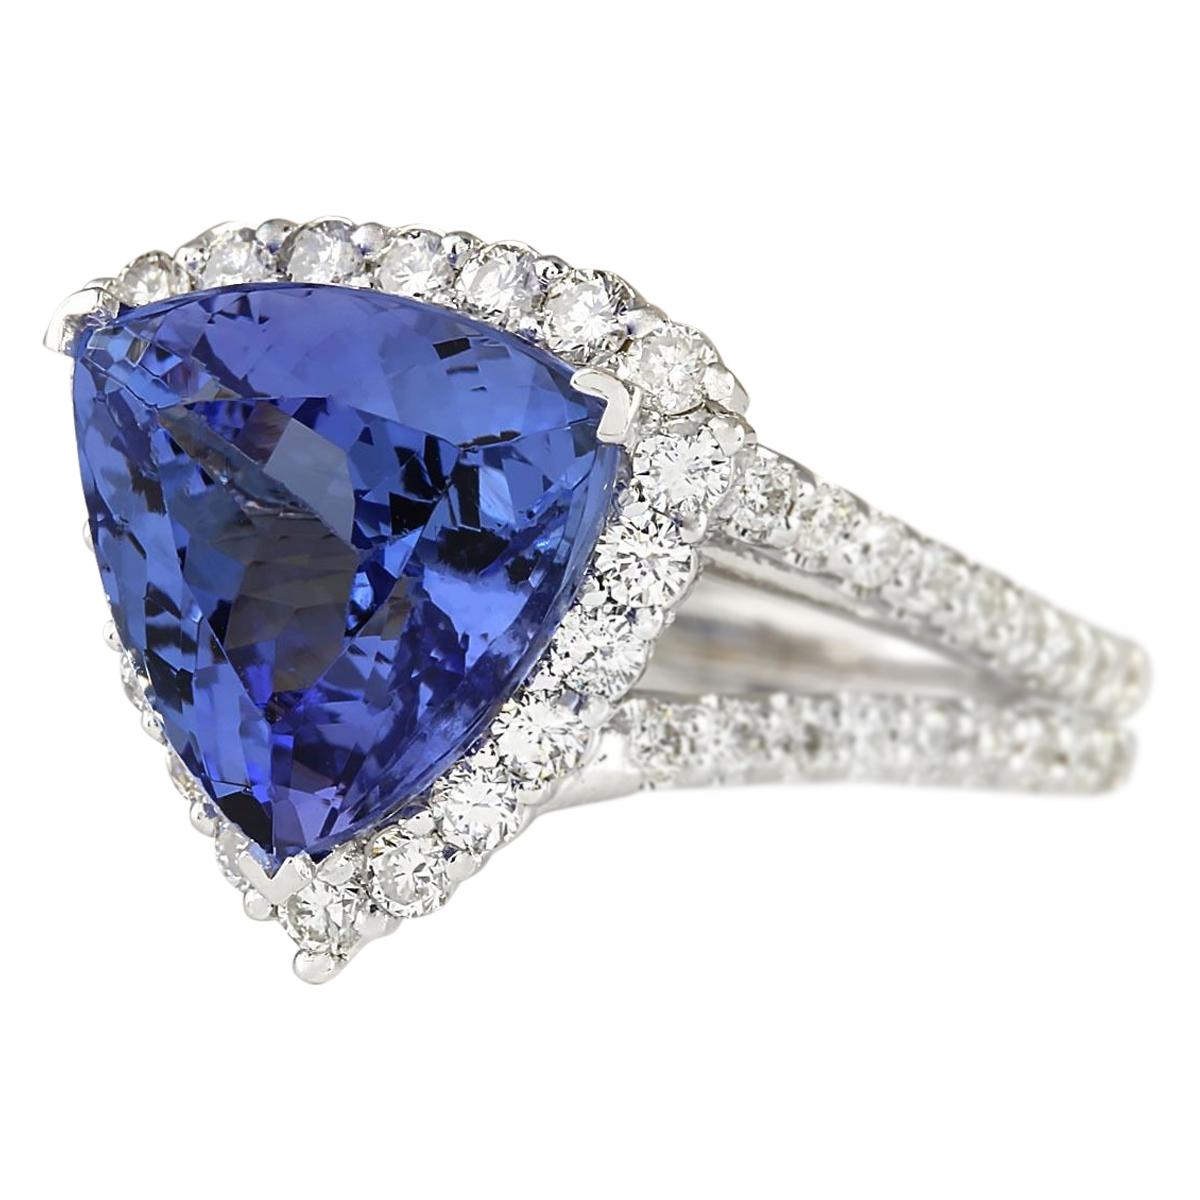 7.07 Carat Tanzanite 14 Karat White Gold Diamond Ring
Stamped: 14K White Gold
Total Ring Weight: 6.3 Grams
Total  Tanzanite Weight is 5.41 Carat (Measures: 11.50x11.50 mm)
Color: Blue
Total  Diamond Weight is 1.66 Carat
Color: F-G, Clarity: